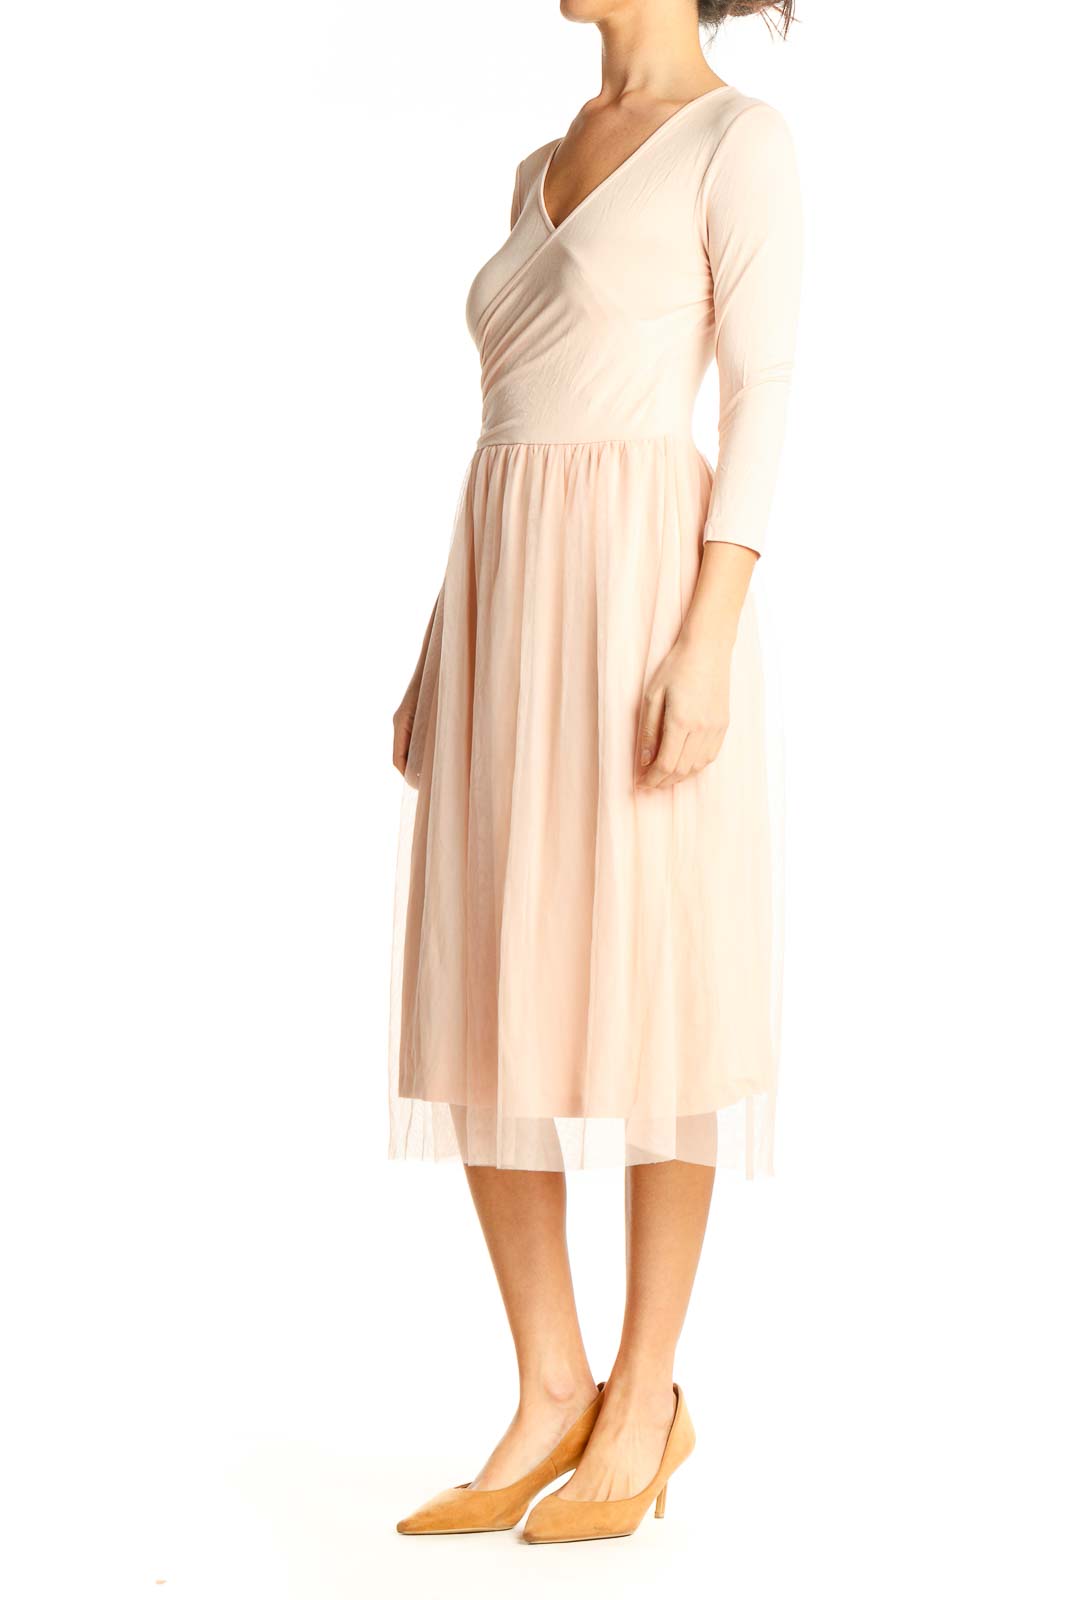 Vero Moda - Pink Classic Fit \u0026 Flare Wrap Dress Unknown | SilkRoll